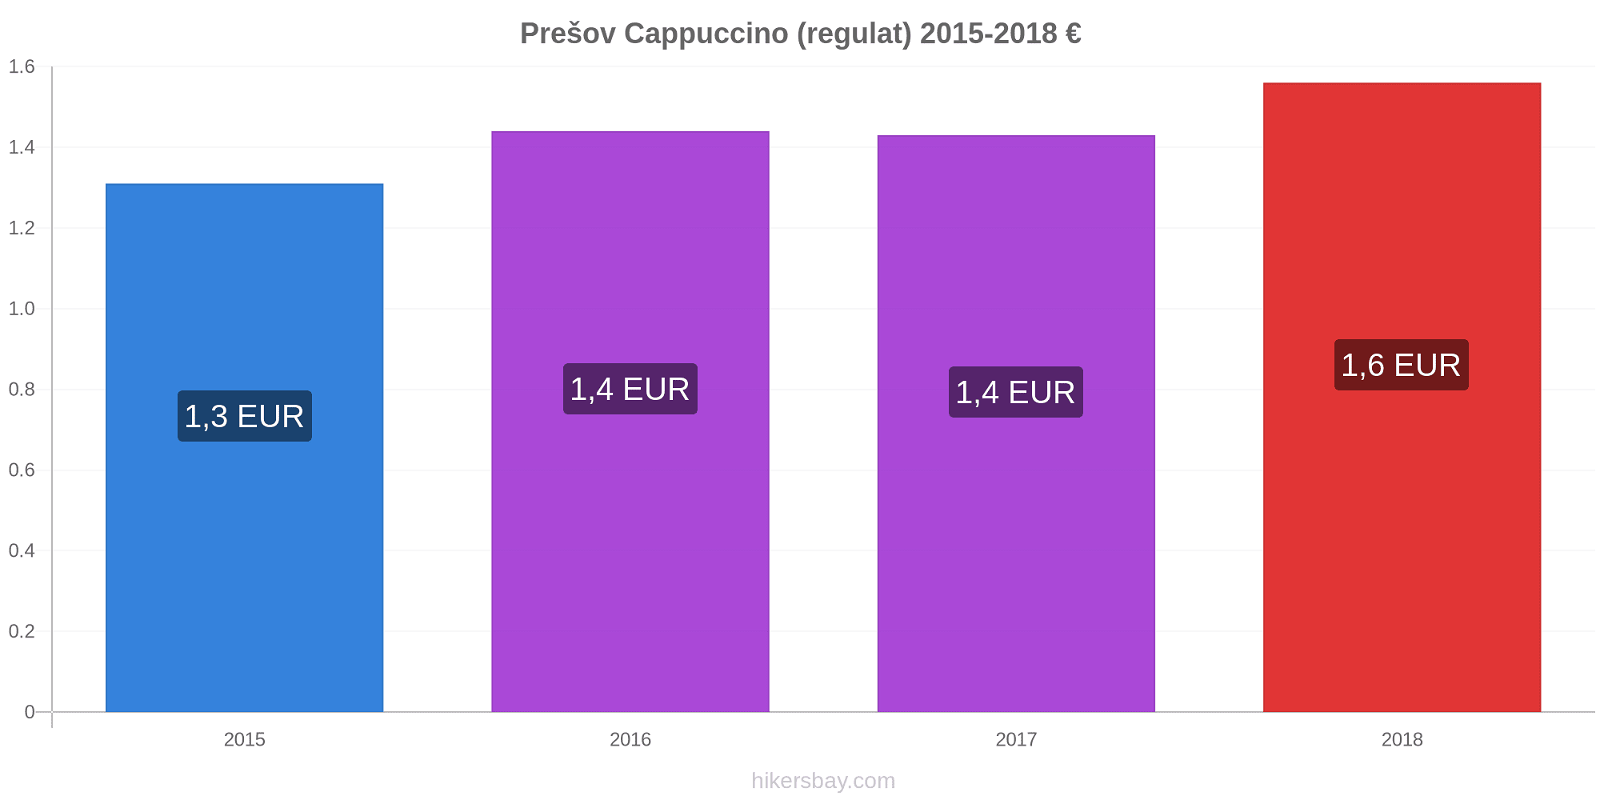 Prešov modificări de preț Cappuccino (regulat) hikersbay.com